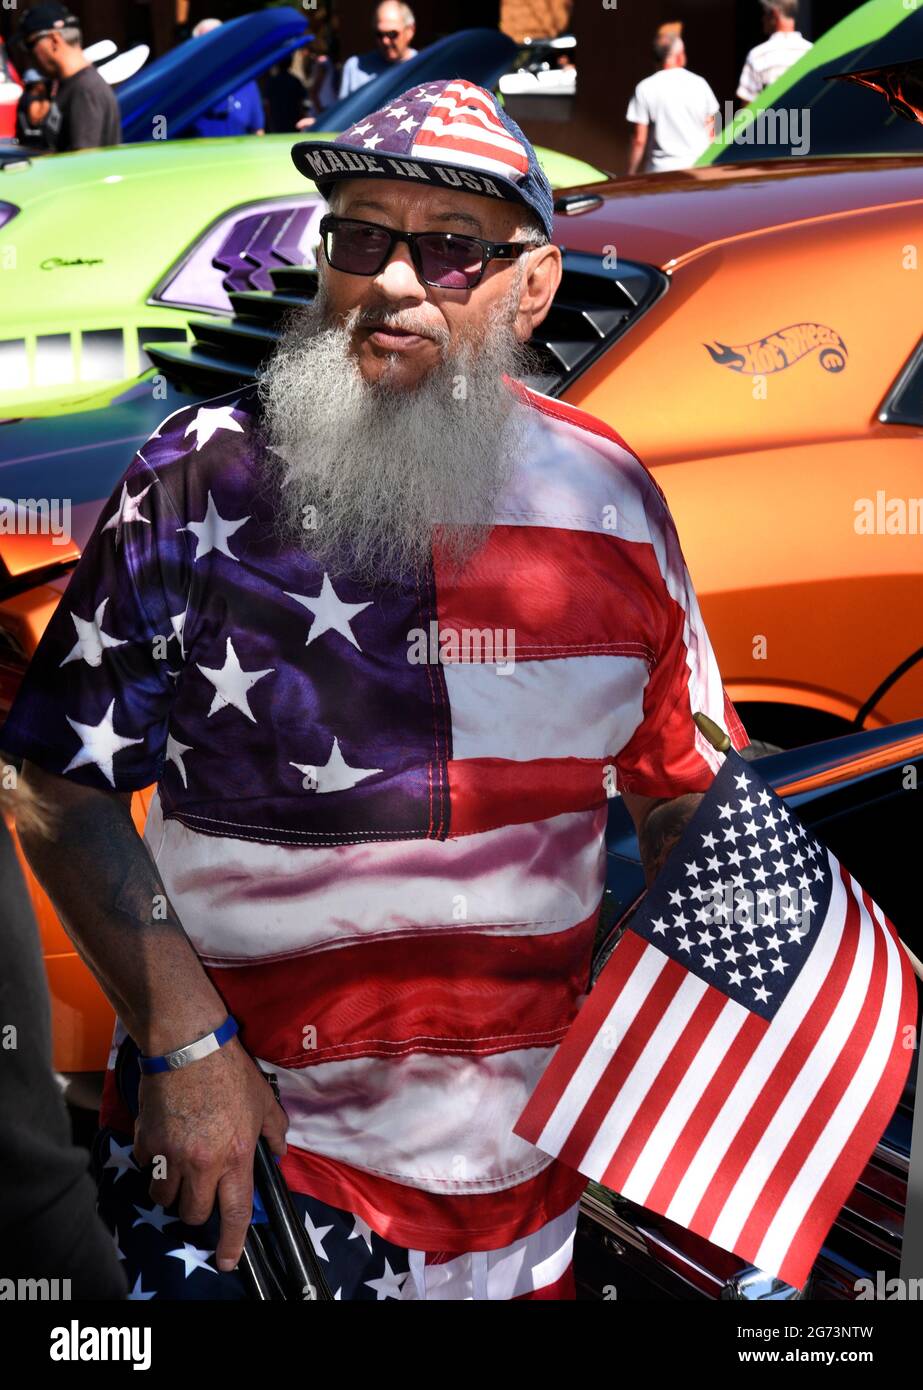 Ein Mann, der in den Farben und im Design der amerikanischen Flagge gekleidet ist, besucht eine Oldtimer-Show am 4. Juli in Santa Fe, New Mexico. Stockfoto